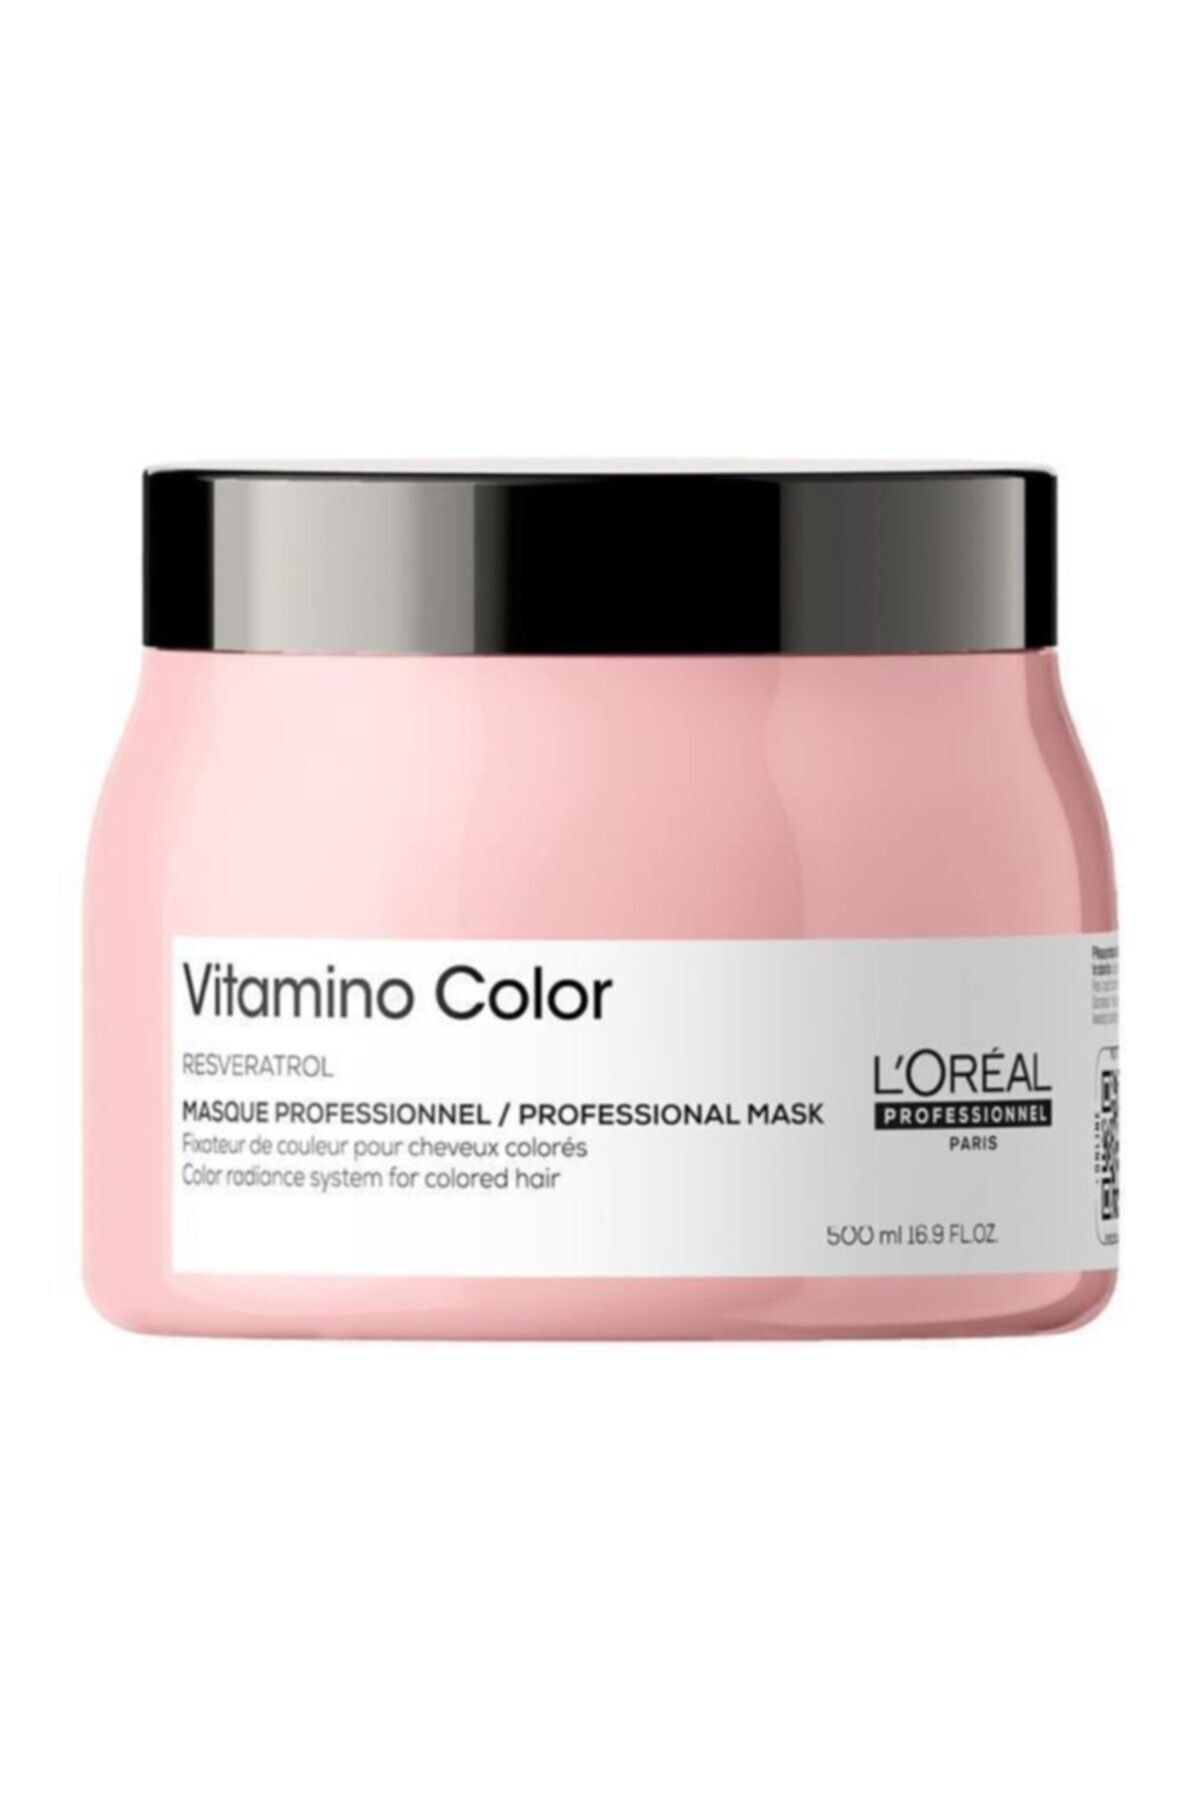 L'oreal Professionnel Se21 Vitamino Color Boyalı Saçlar İçin Renk Koruyucu Maske 500ml